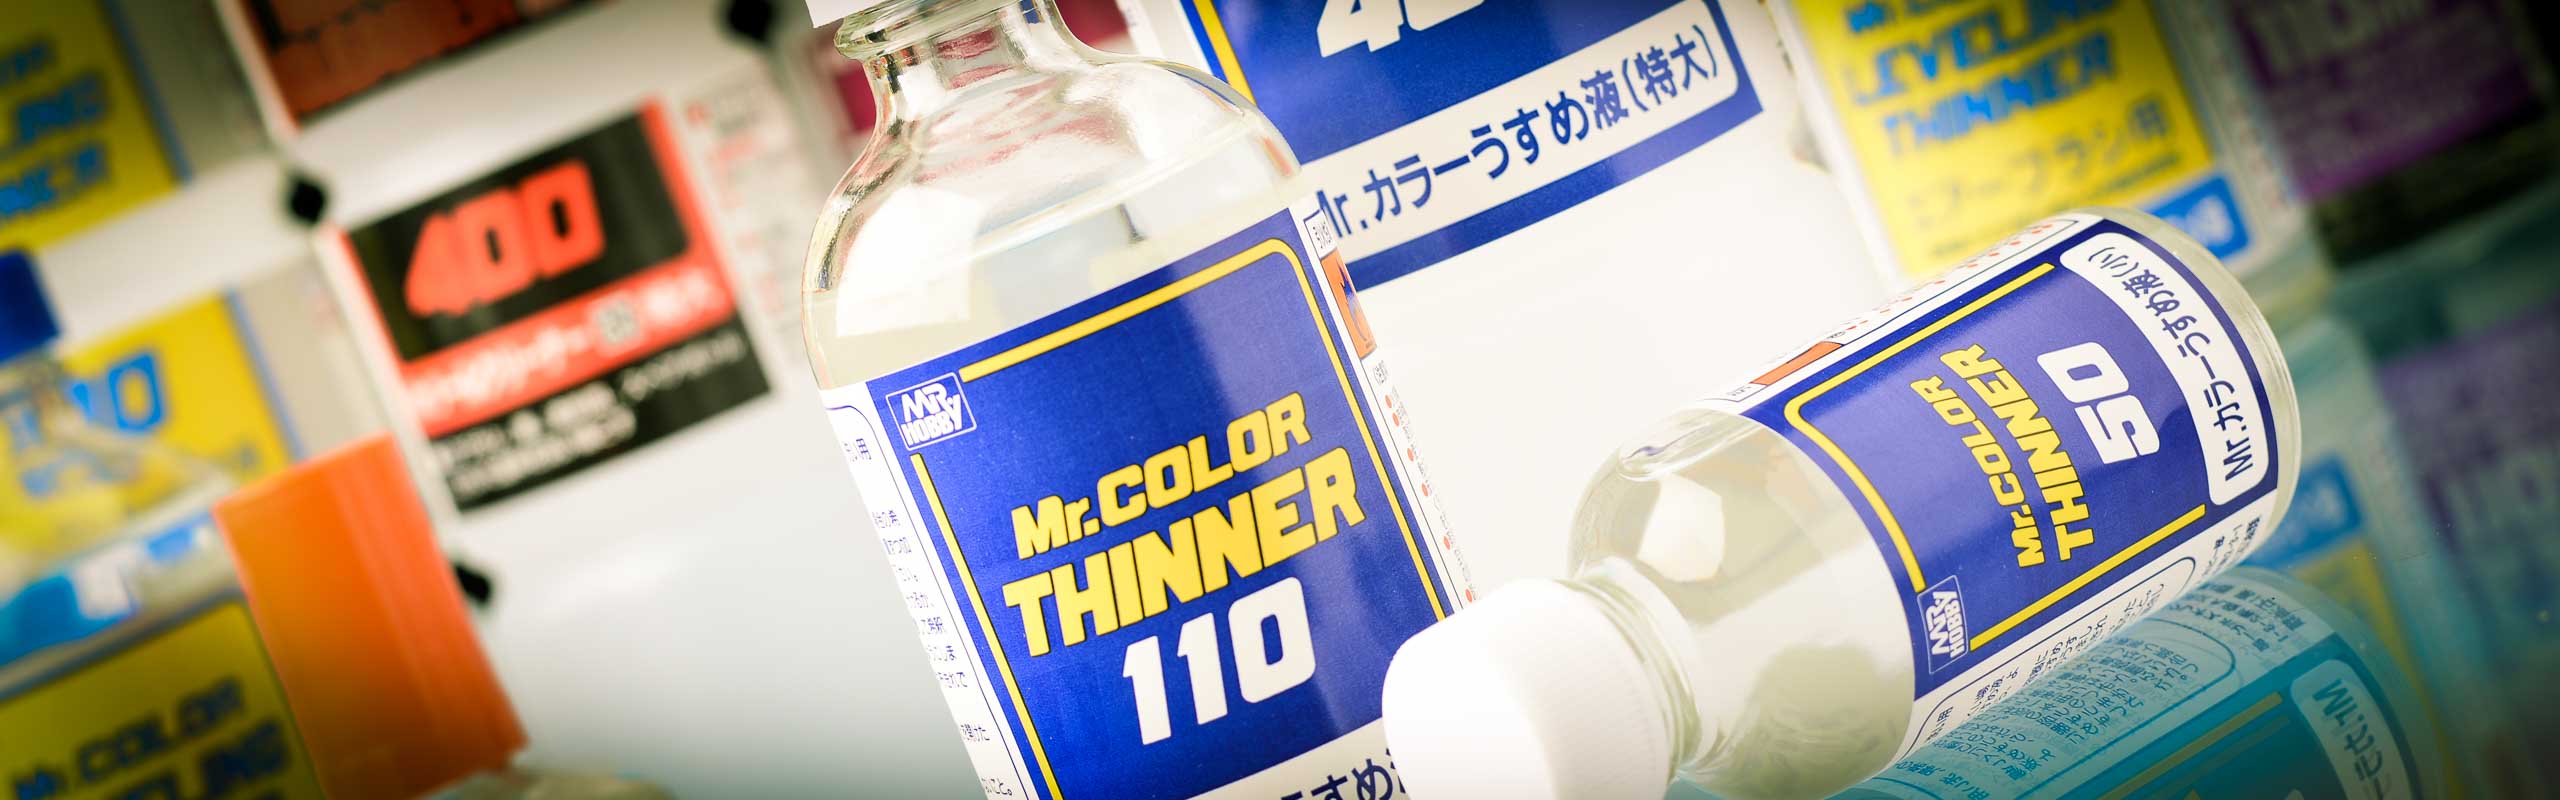 Mr. Color Leveling Thinner 400ml Plastic Bottle -- Hobby and Model